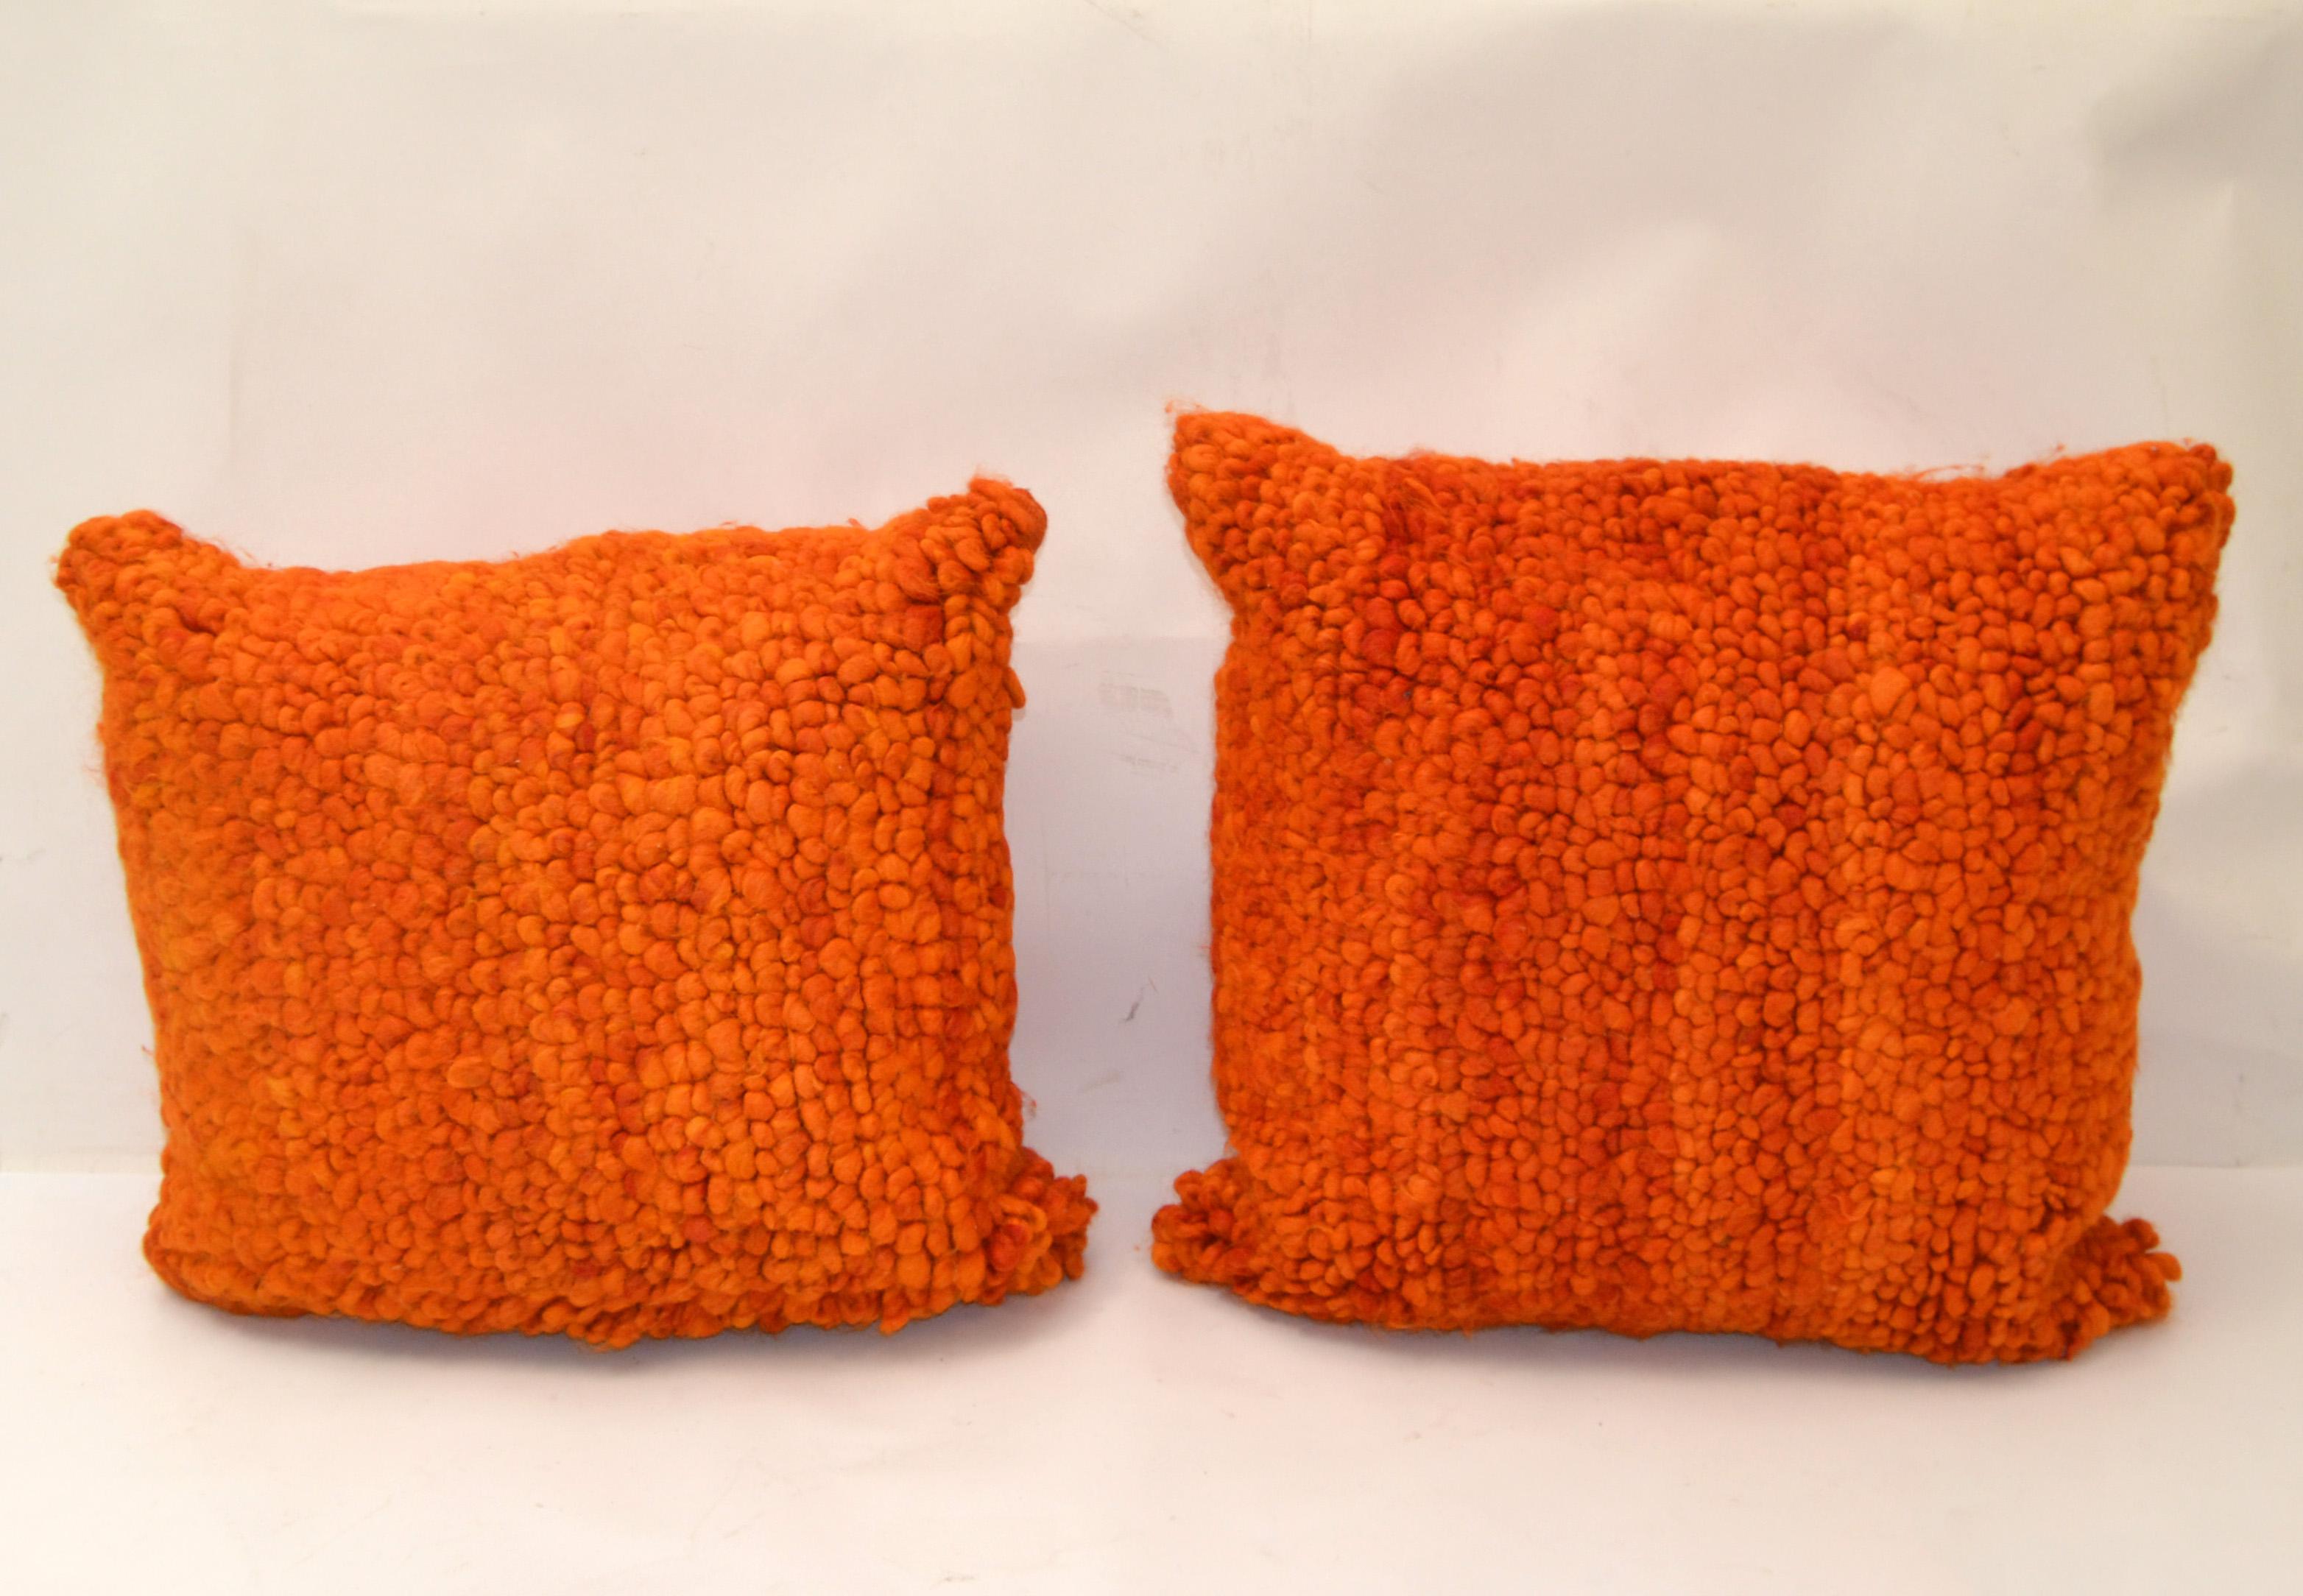 2er-Set 'My Primaloft Pillow' in Orange Cotton von Jonathan Adler für Bloomingdale's.
Komplette Kissen, gefüllt mit Flair-Daunen & Verschluss ist der klassische unsichtbare Reißverschluss. 
Beide Kissen kommen in der originalen Plastikhülle und